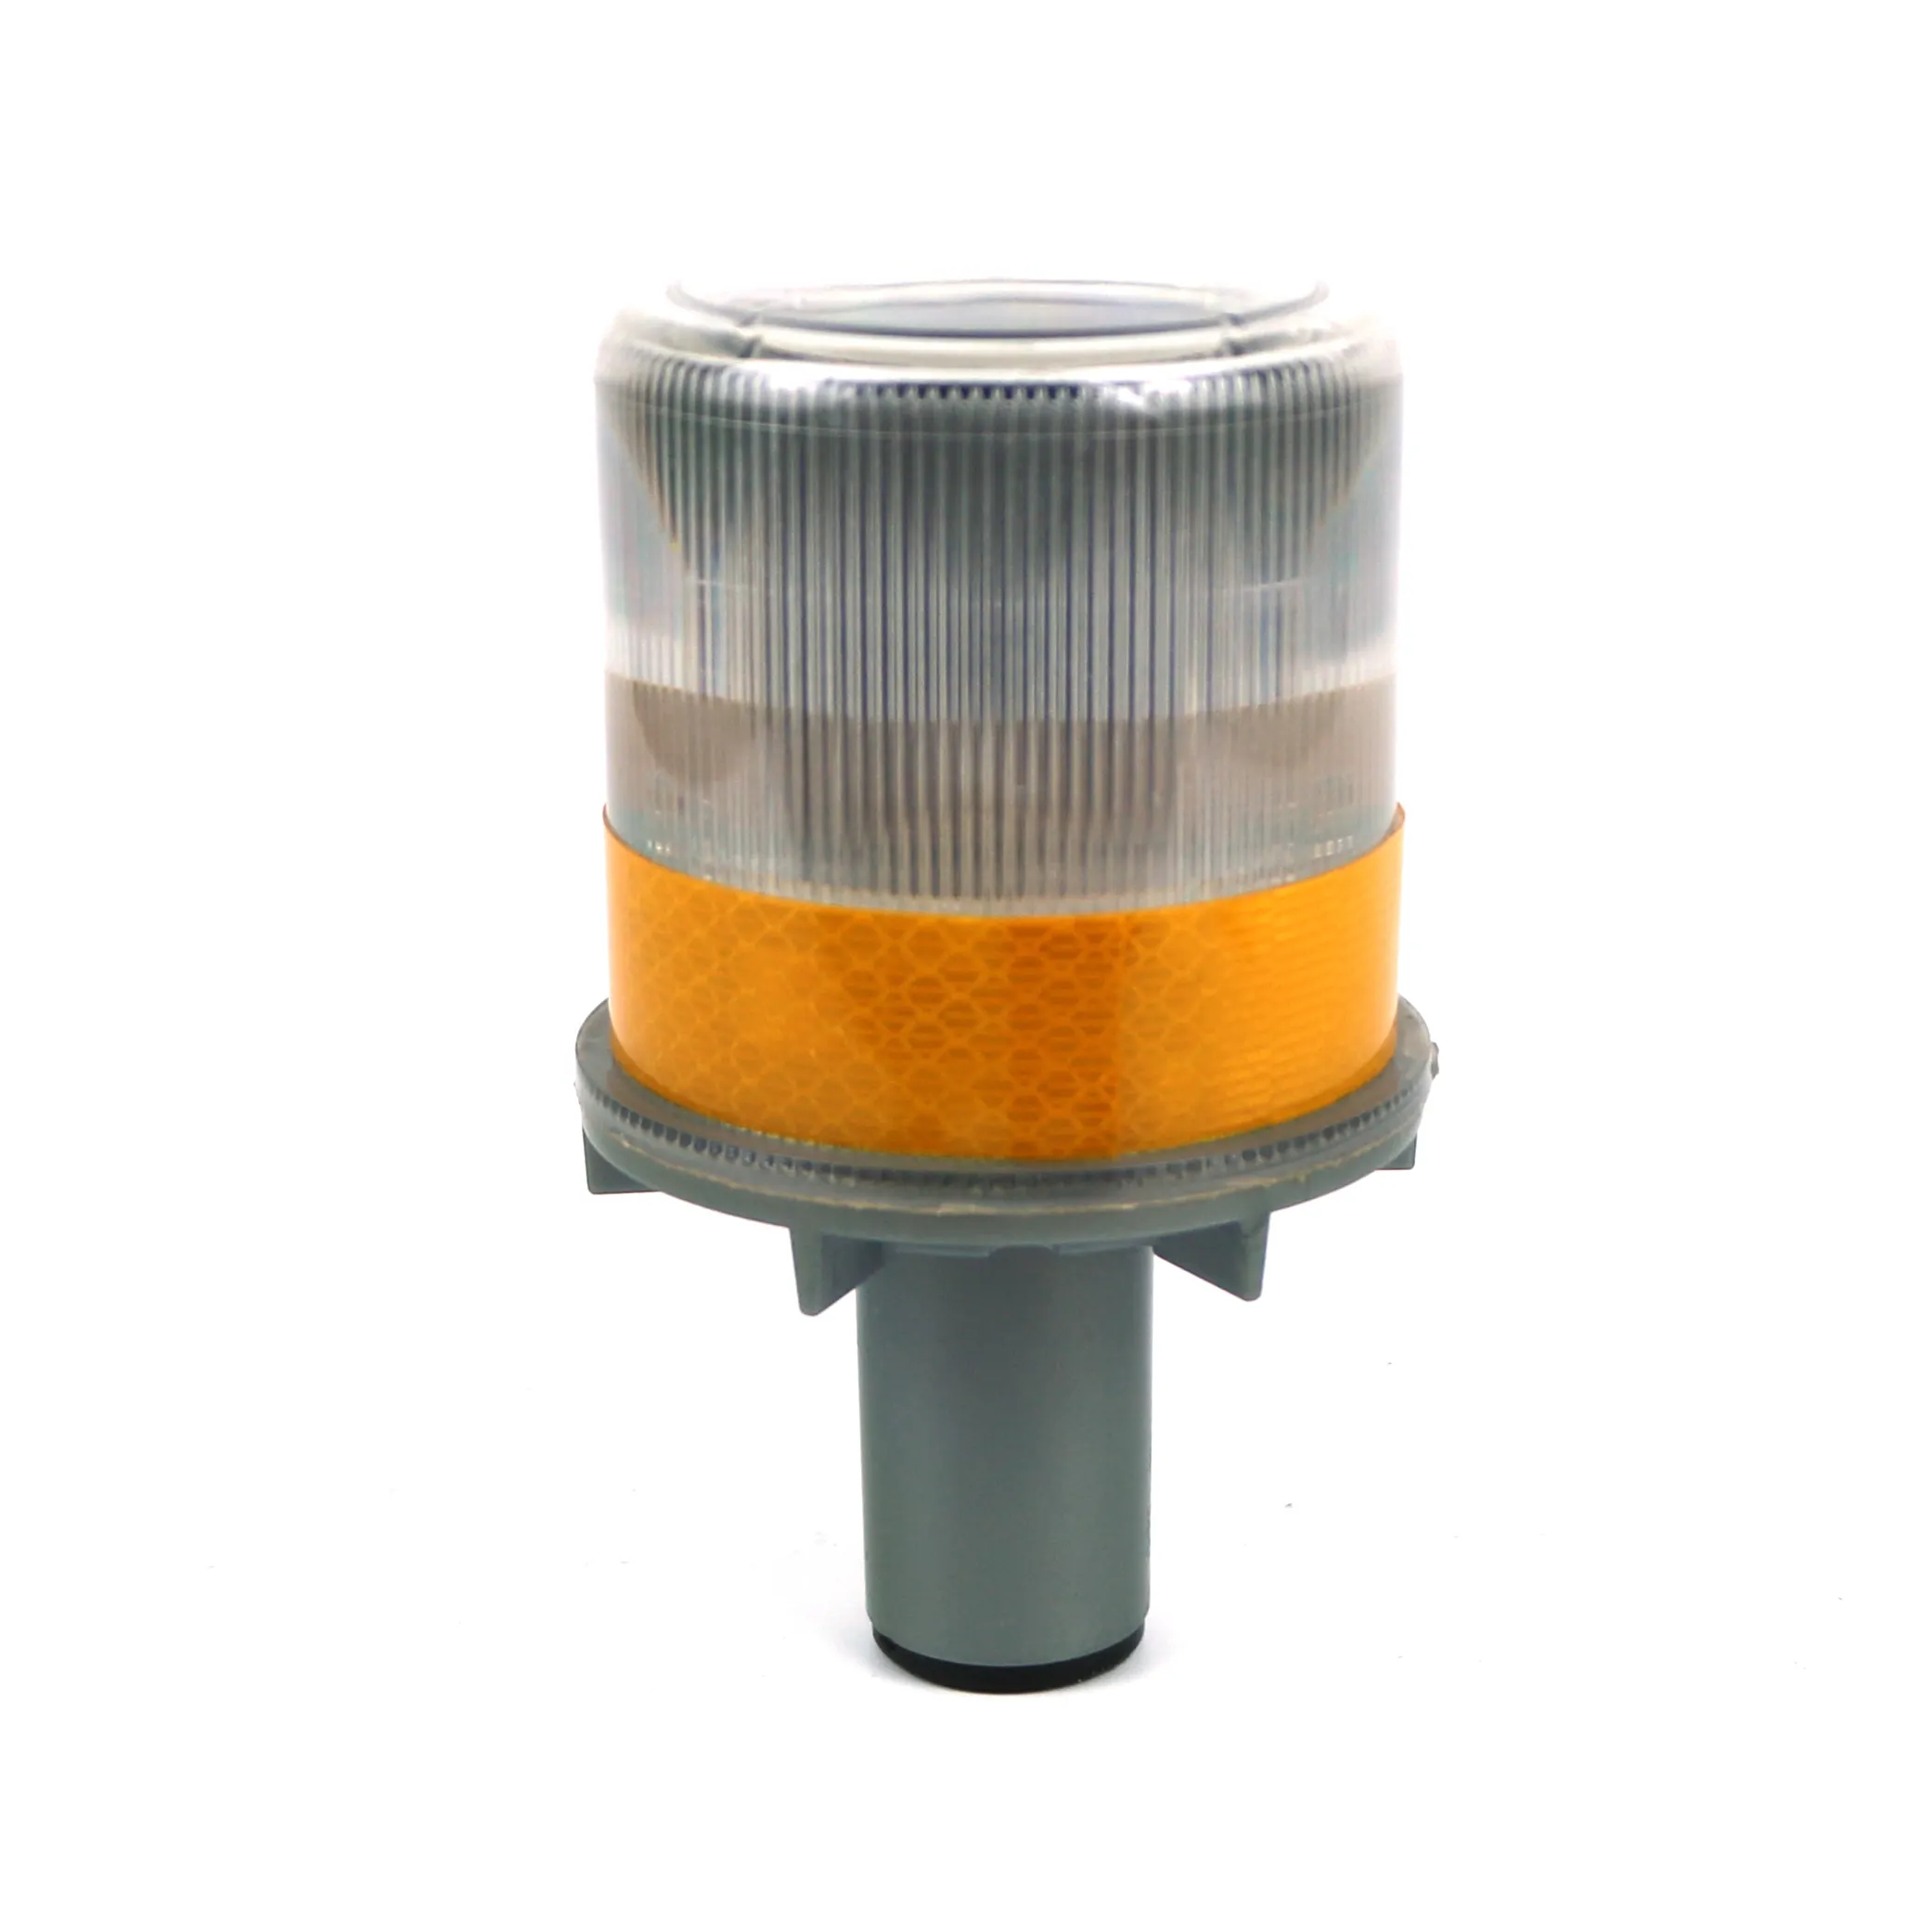 מגדלור שמש מנורת led אמבר מהבהב strobe משואת אור משמש לתנועה קונוס תאורת משואה